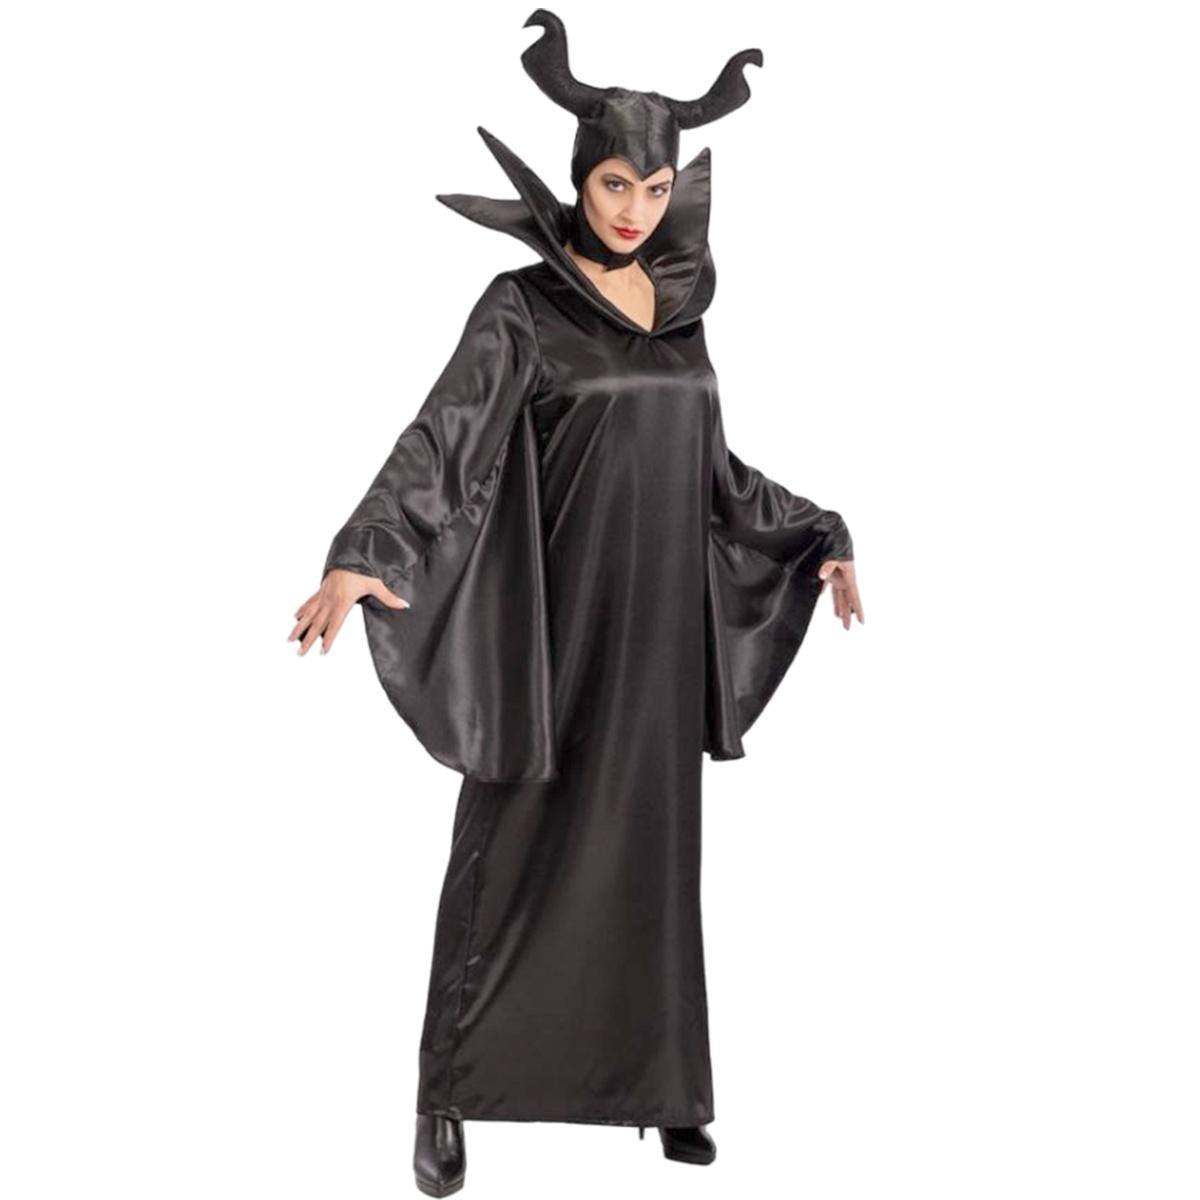 Costume Strega Malefica Donna in vendita su M2 Store